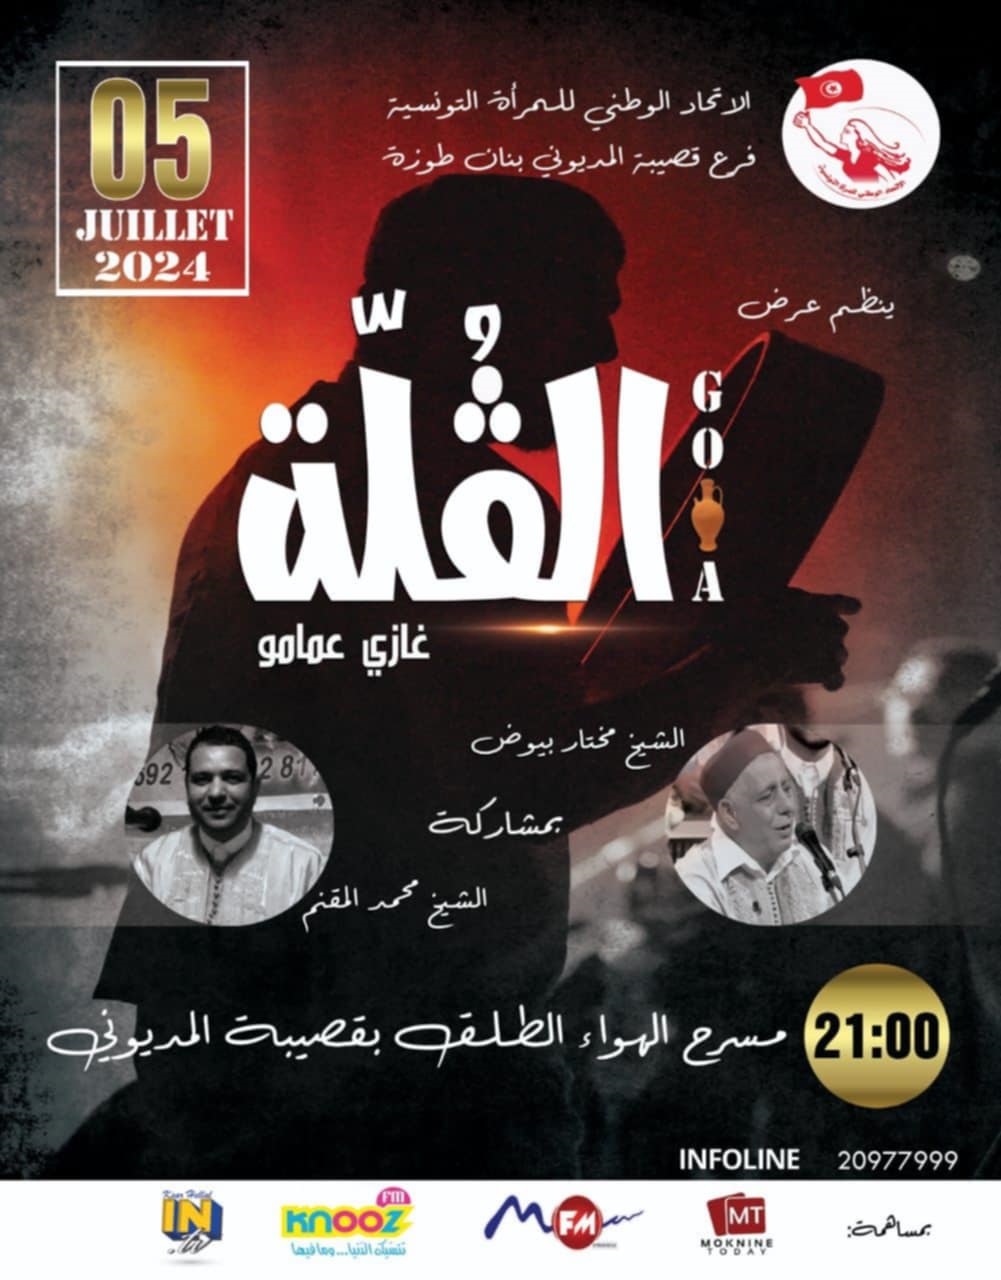 عرض صوفي خيري في قصيبة المديوني لدعم العائلات المعوزة: "الڨلة" ينير المسرح البلدي